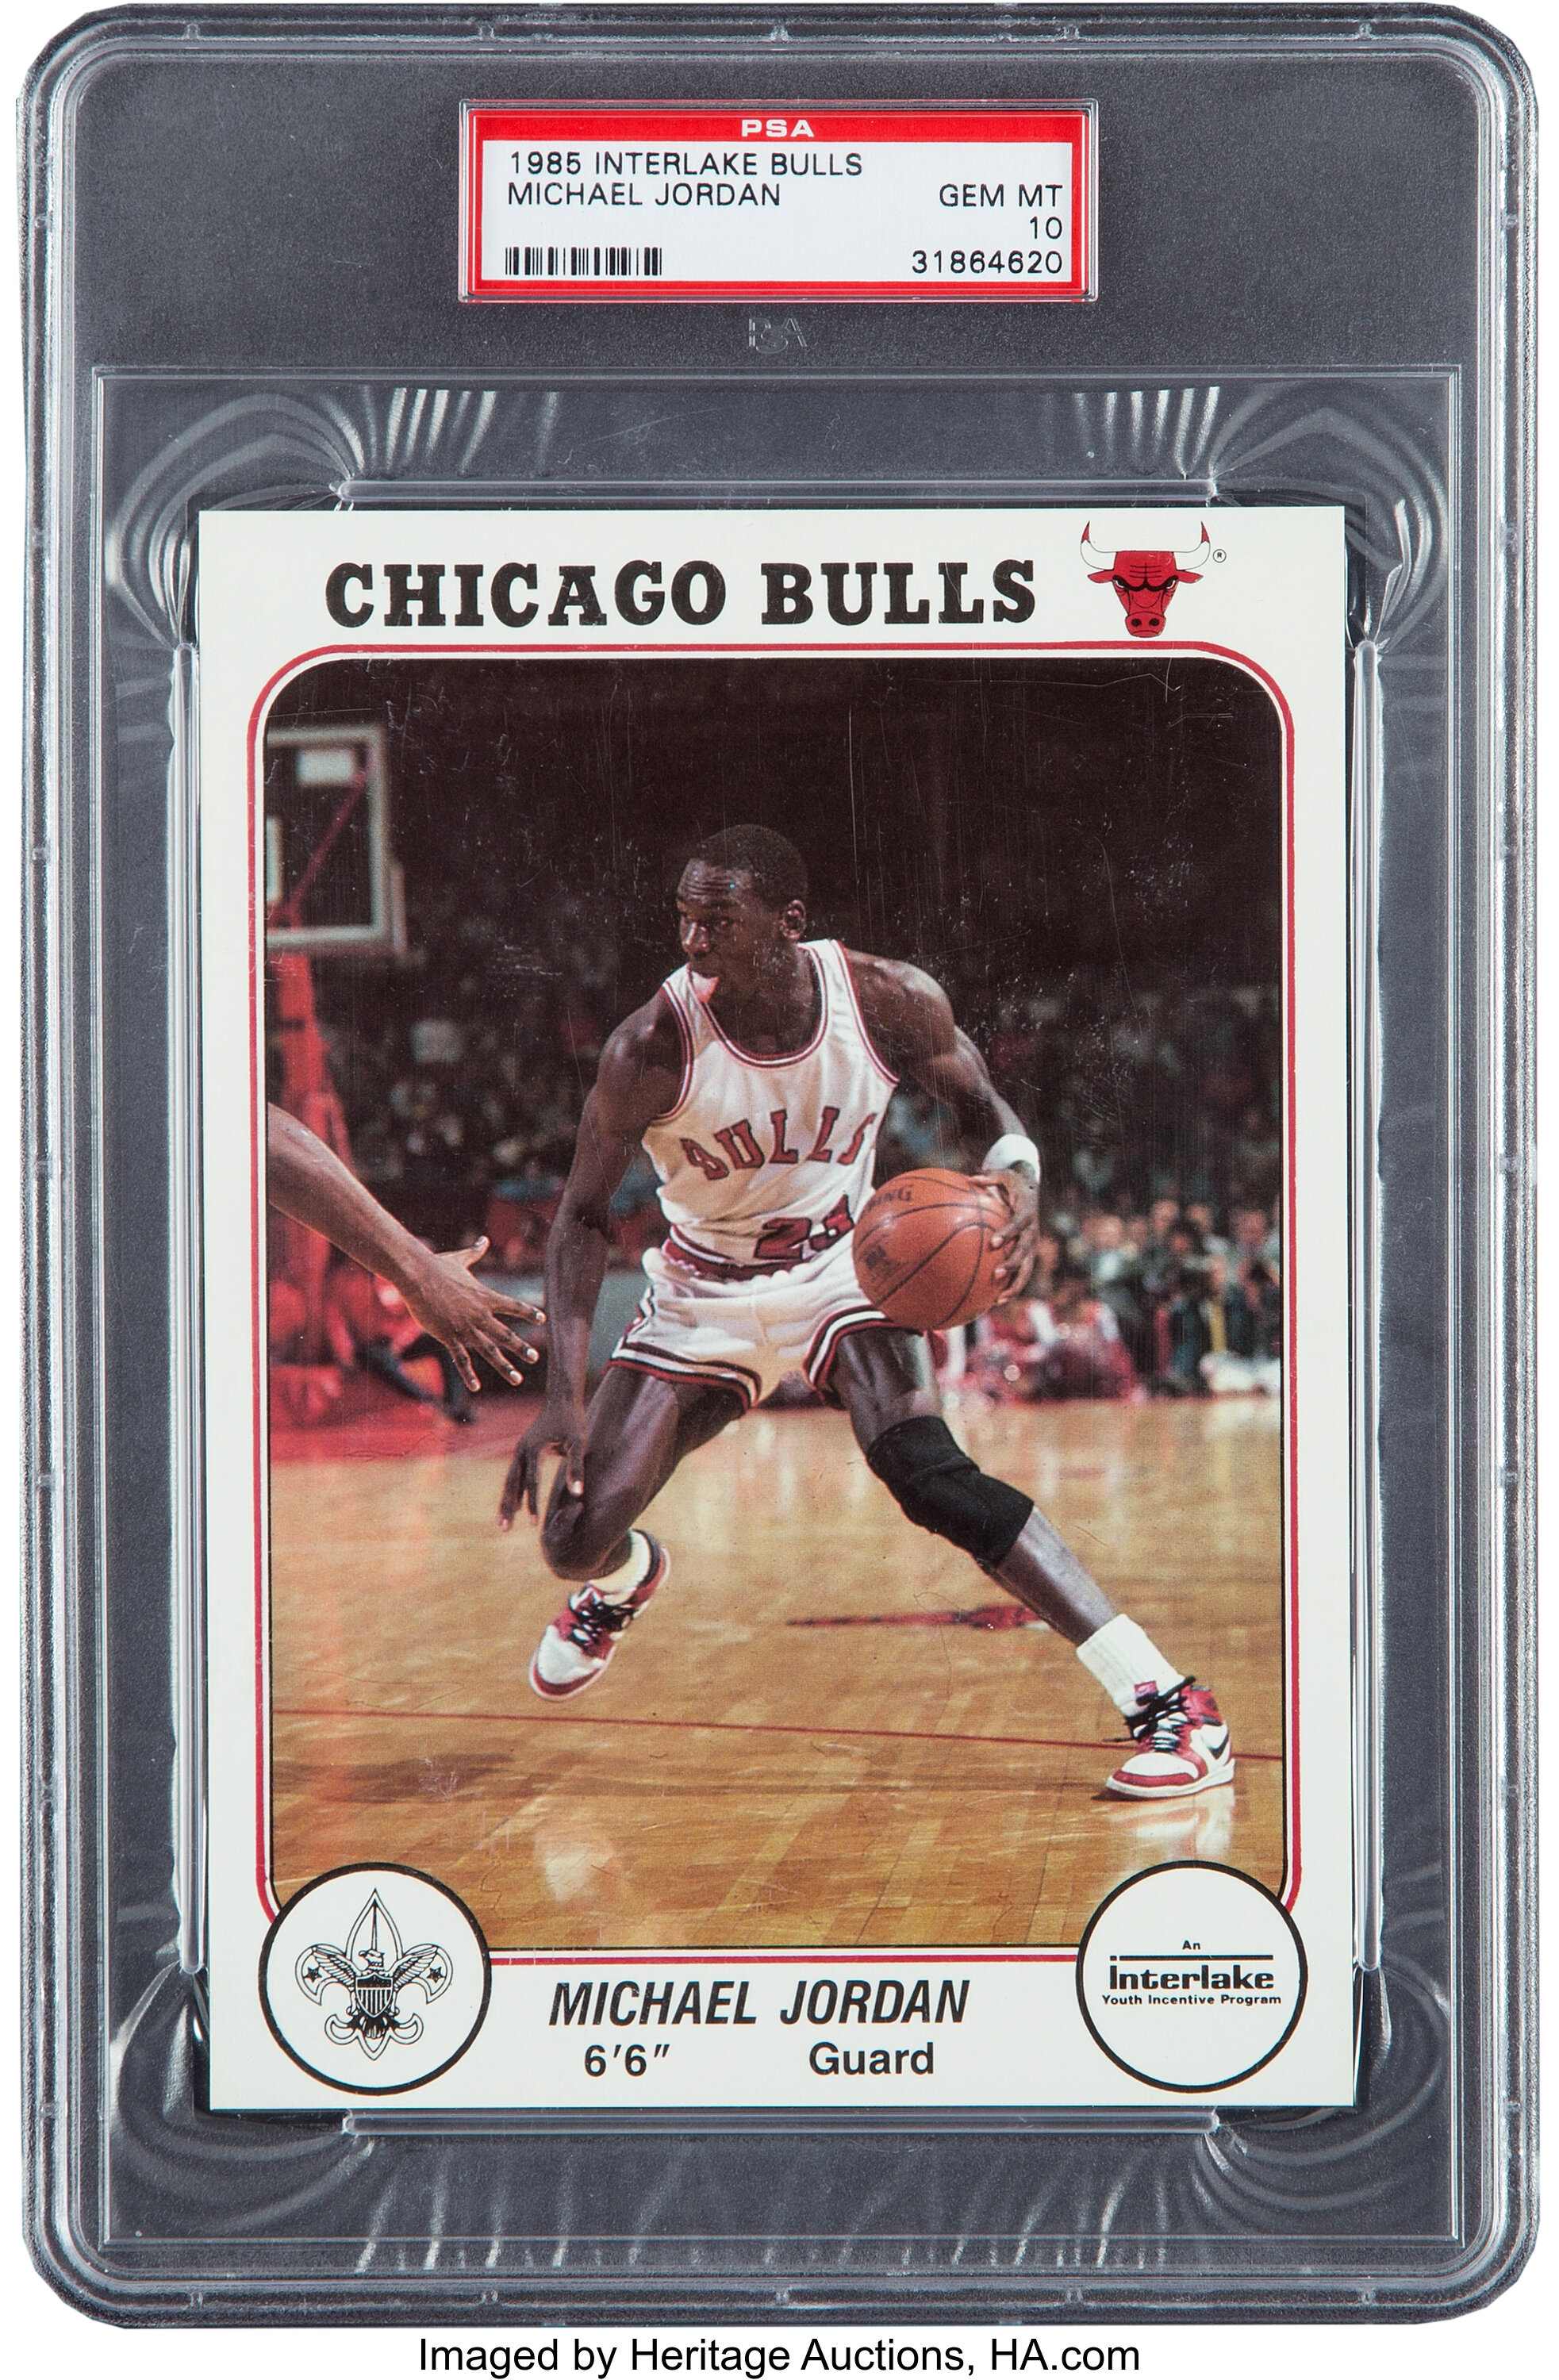 Chicago bulls vintage jersey! - Gem